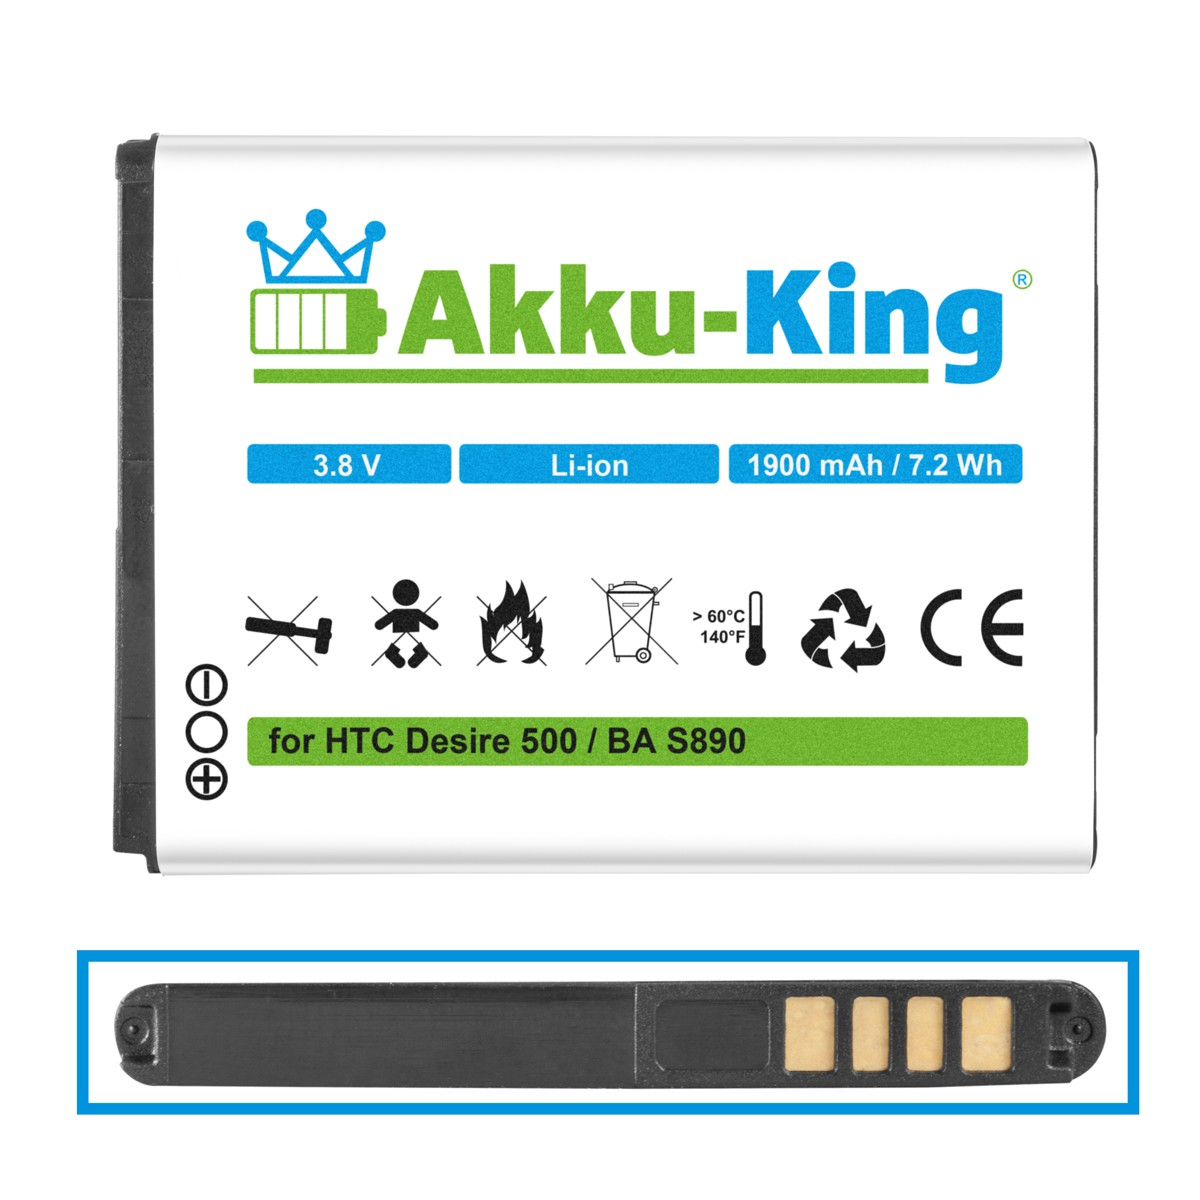 3.8 Akku Volt, HTC Handy-Akku, Li-Ion S8900 1900mAh BA kompatibel mit AKKU-KING